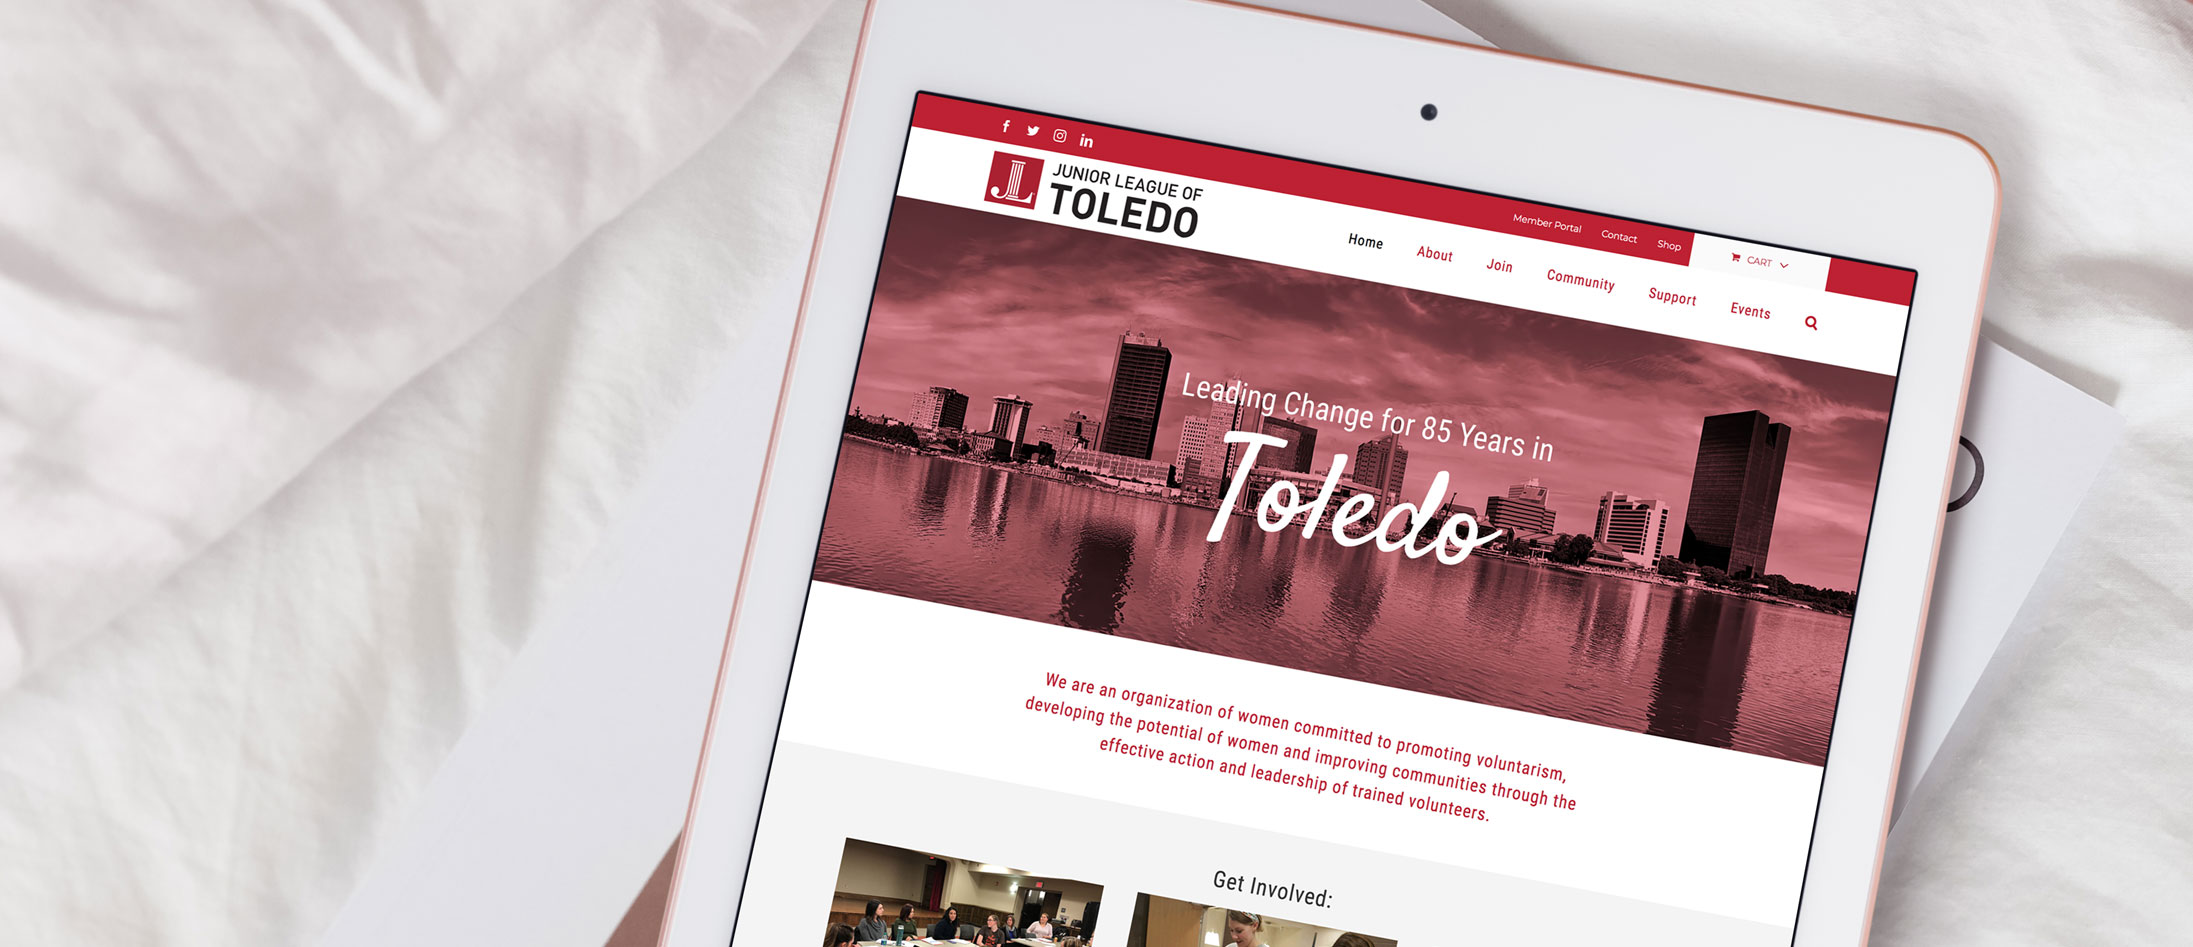 Junior League of Toledo Web Design & Graphic Design